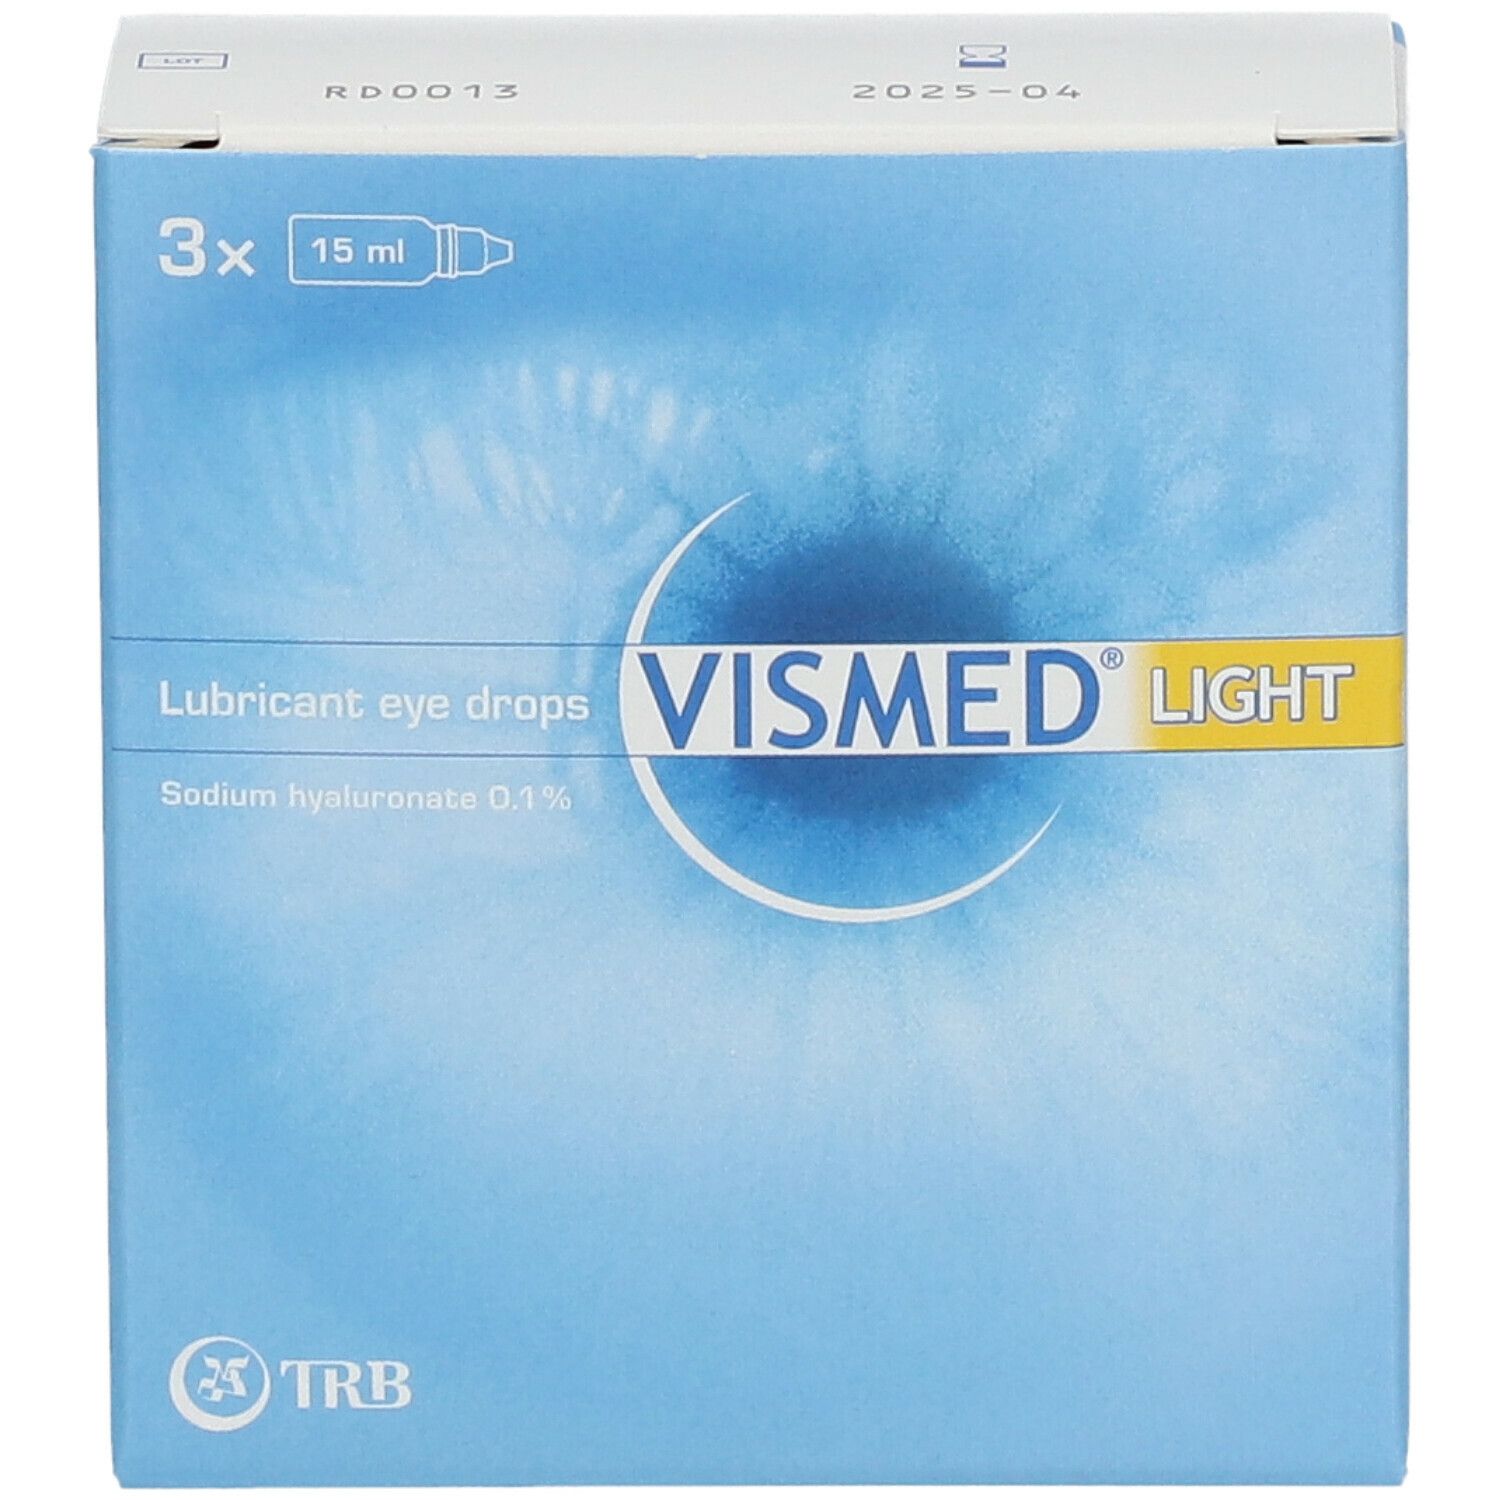 VISMED® LIGHT